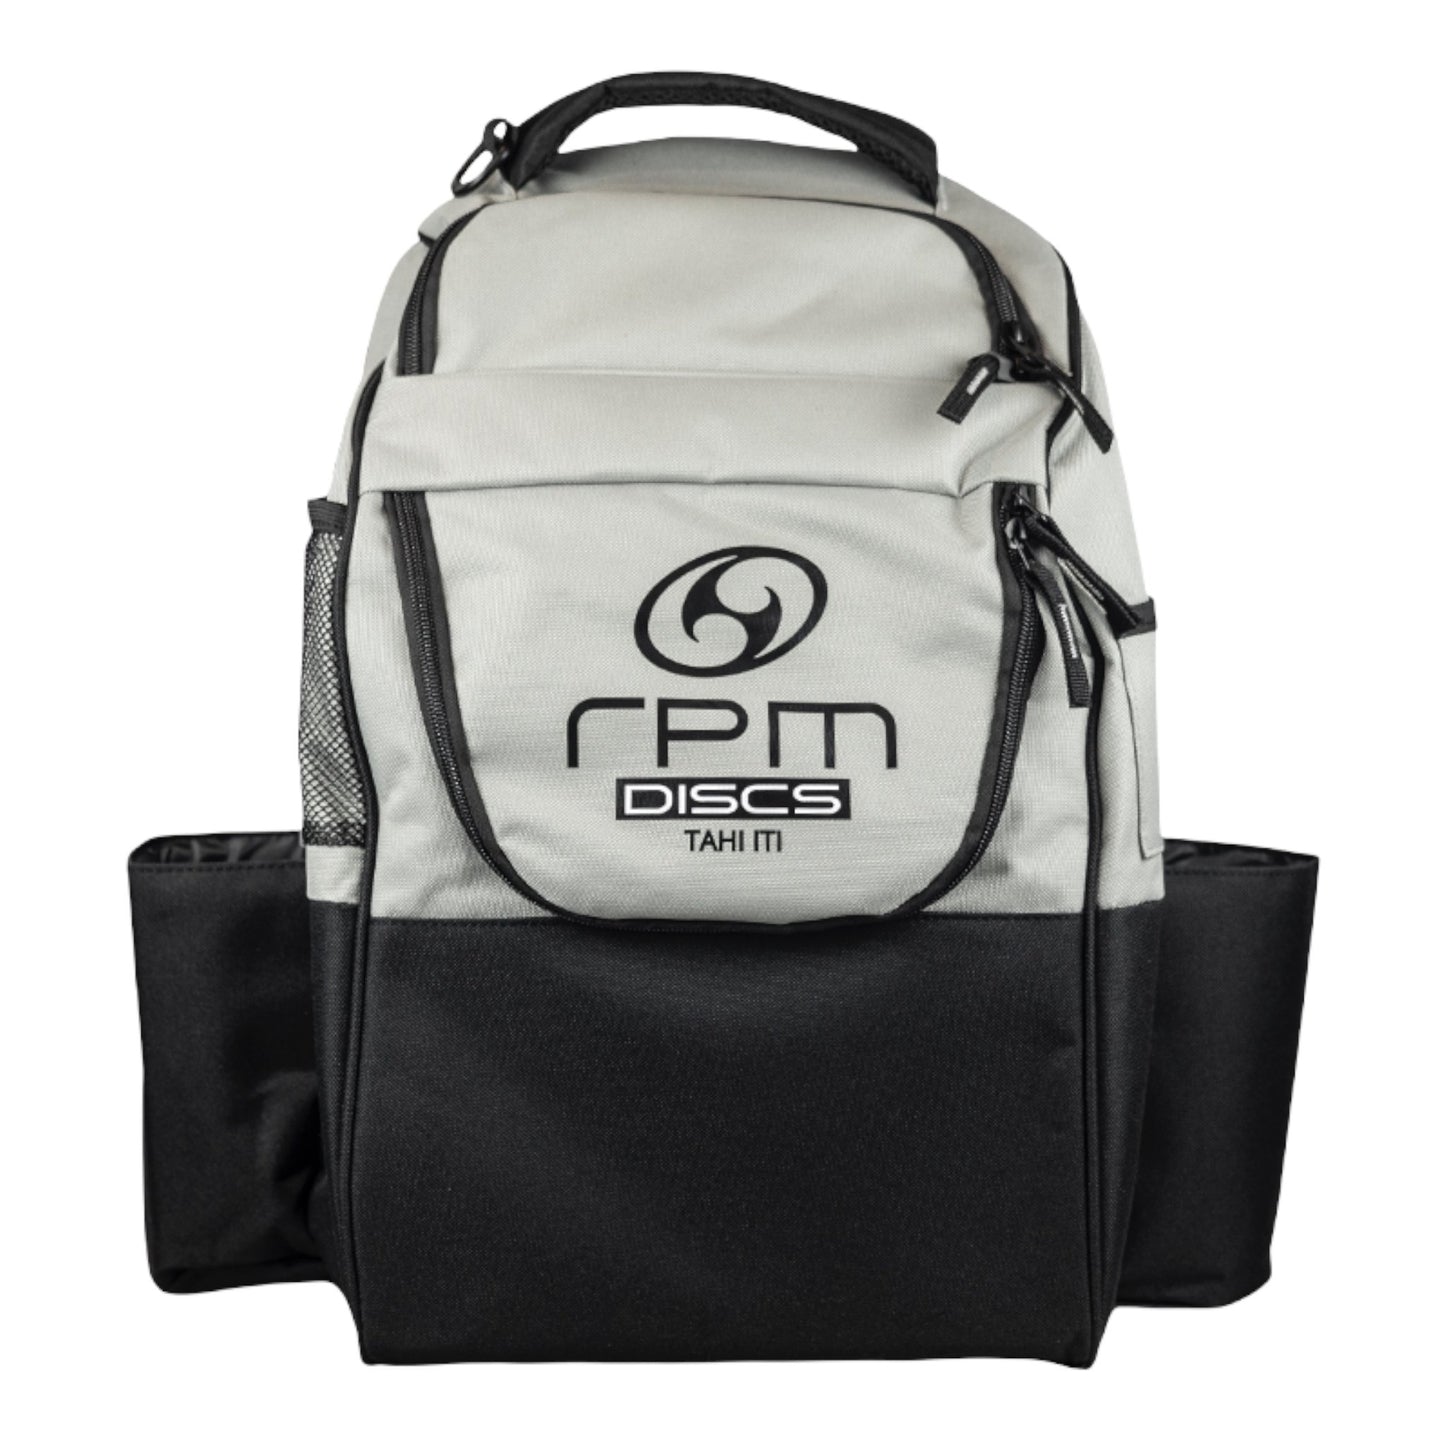 RPM Discs Tahi Iti Backpack Disc Golf Bag Disc Golf